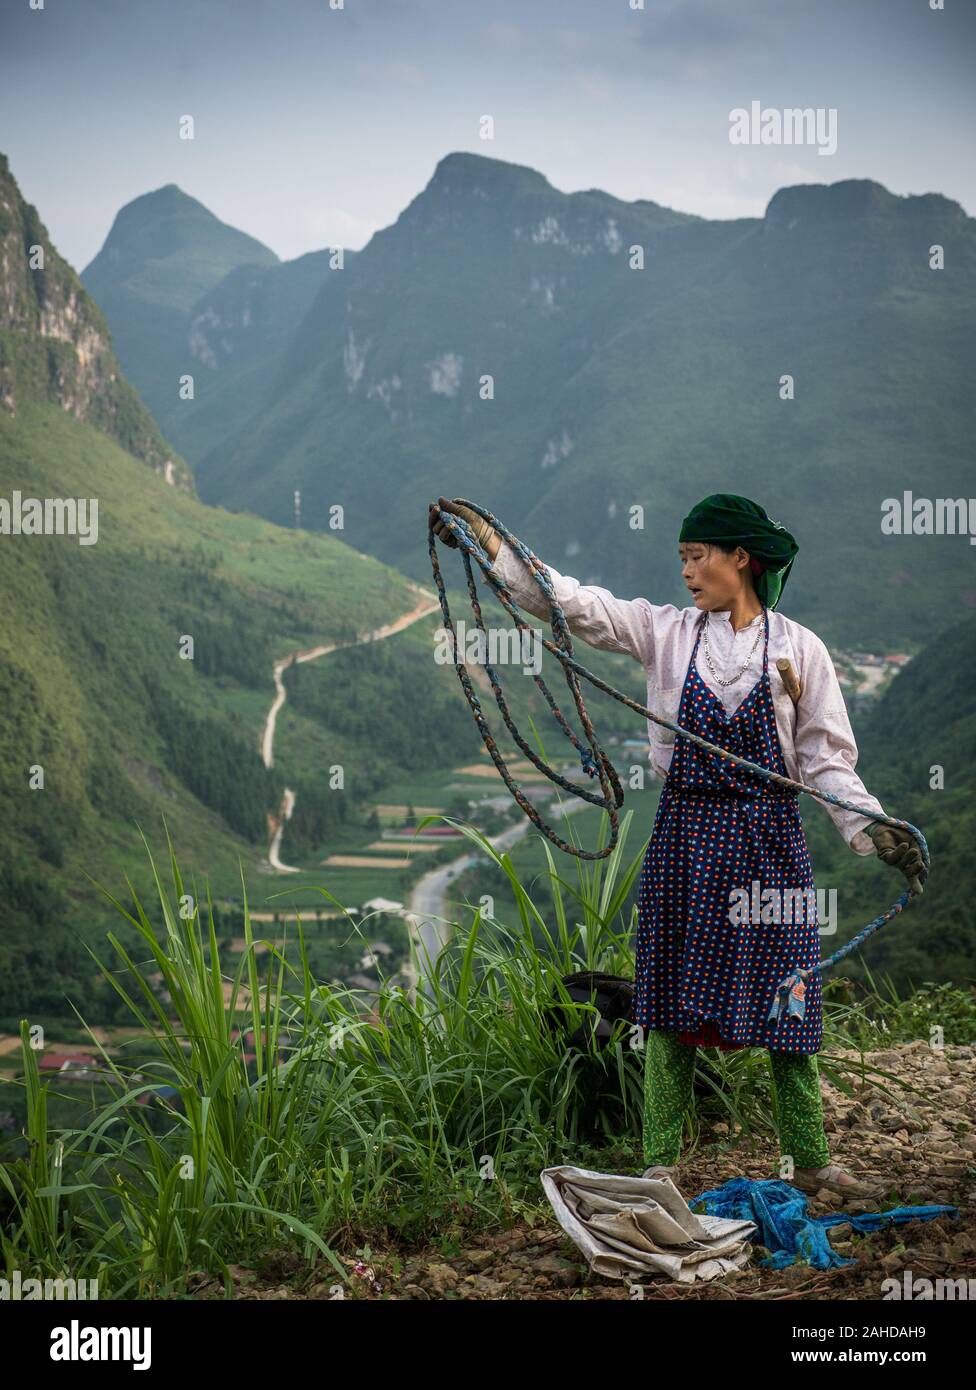 Weibliche vietnamesischen Bauern der ethnischen Minderheit aufrollen Seil in den Bergen von Nord-vietnam, lebendigen Grünen karst Berge im Hintergrund Stockfoto